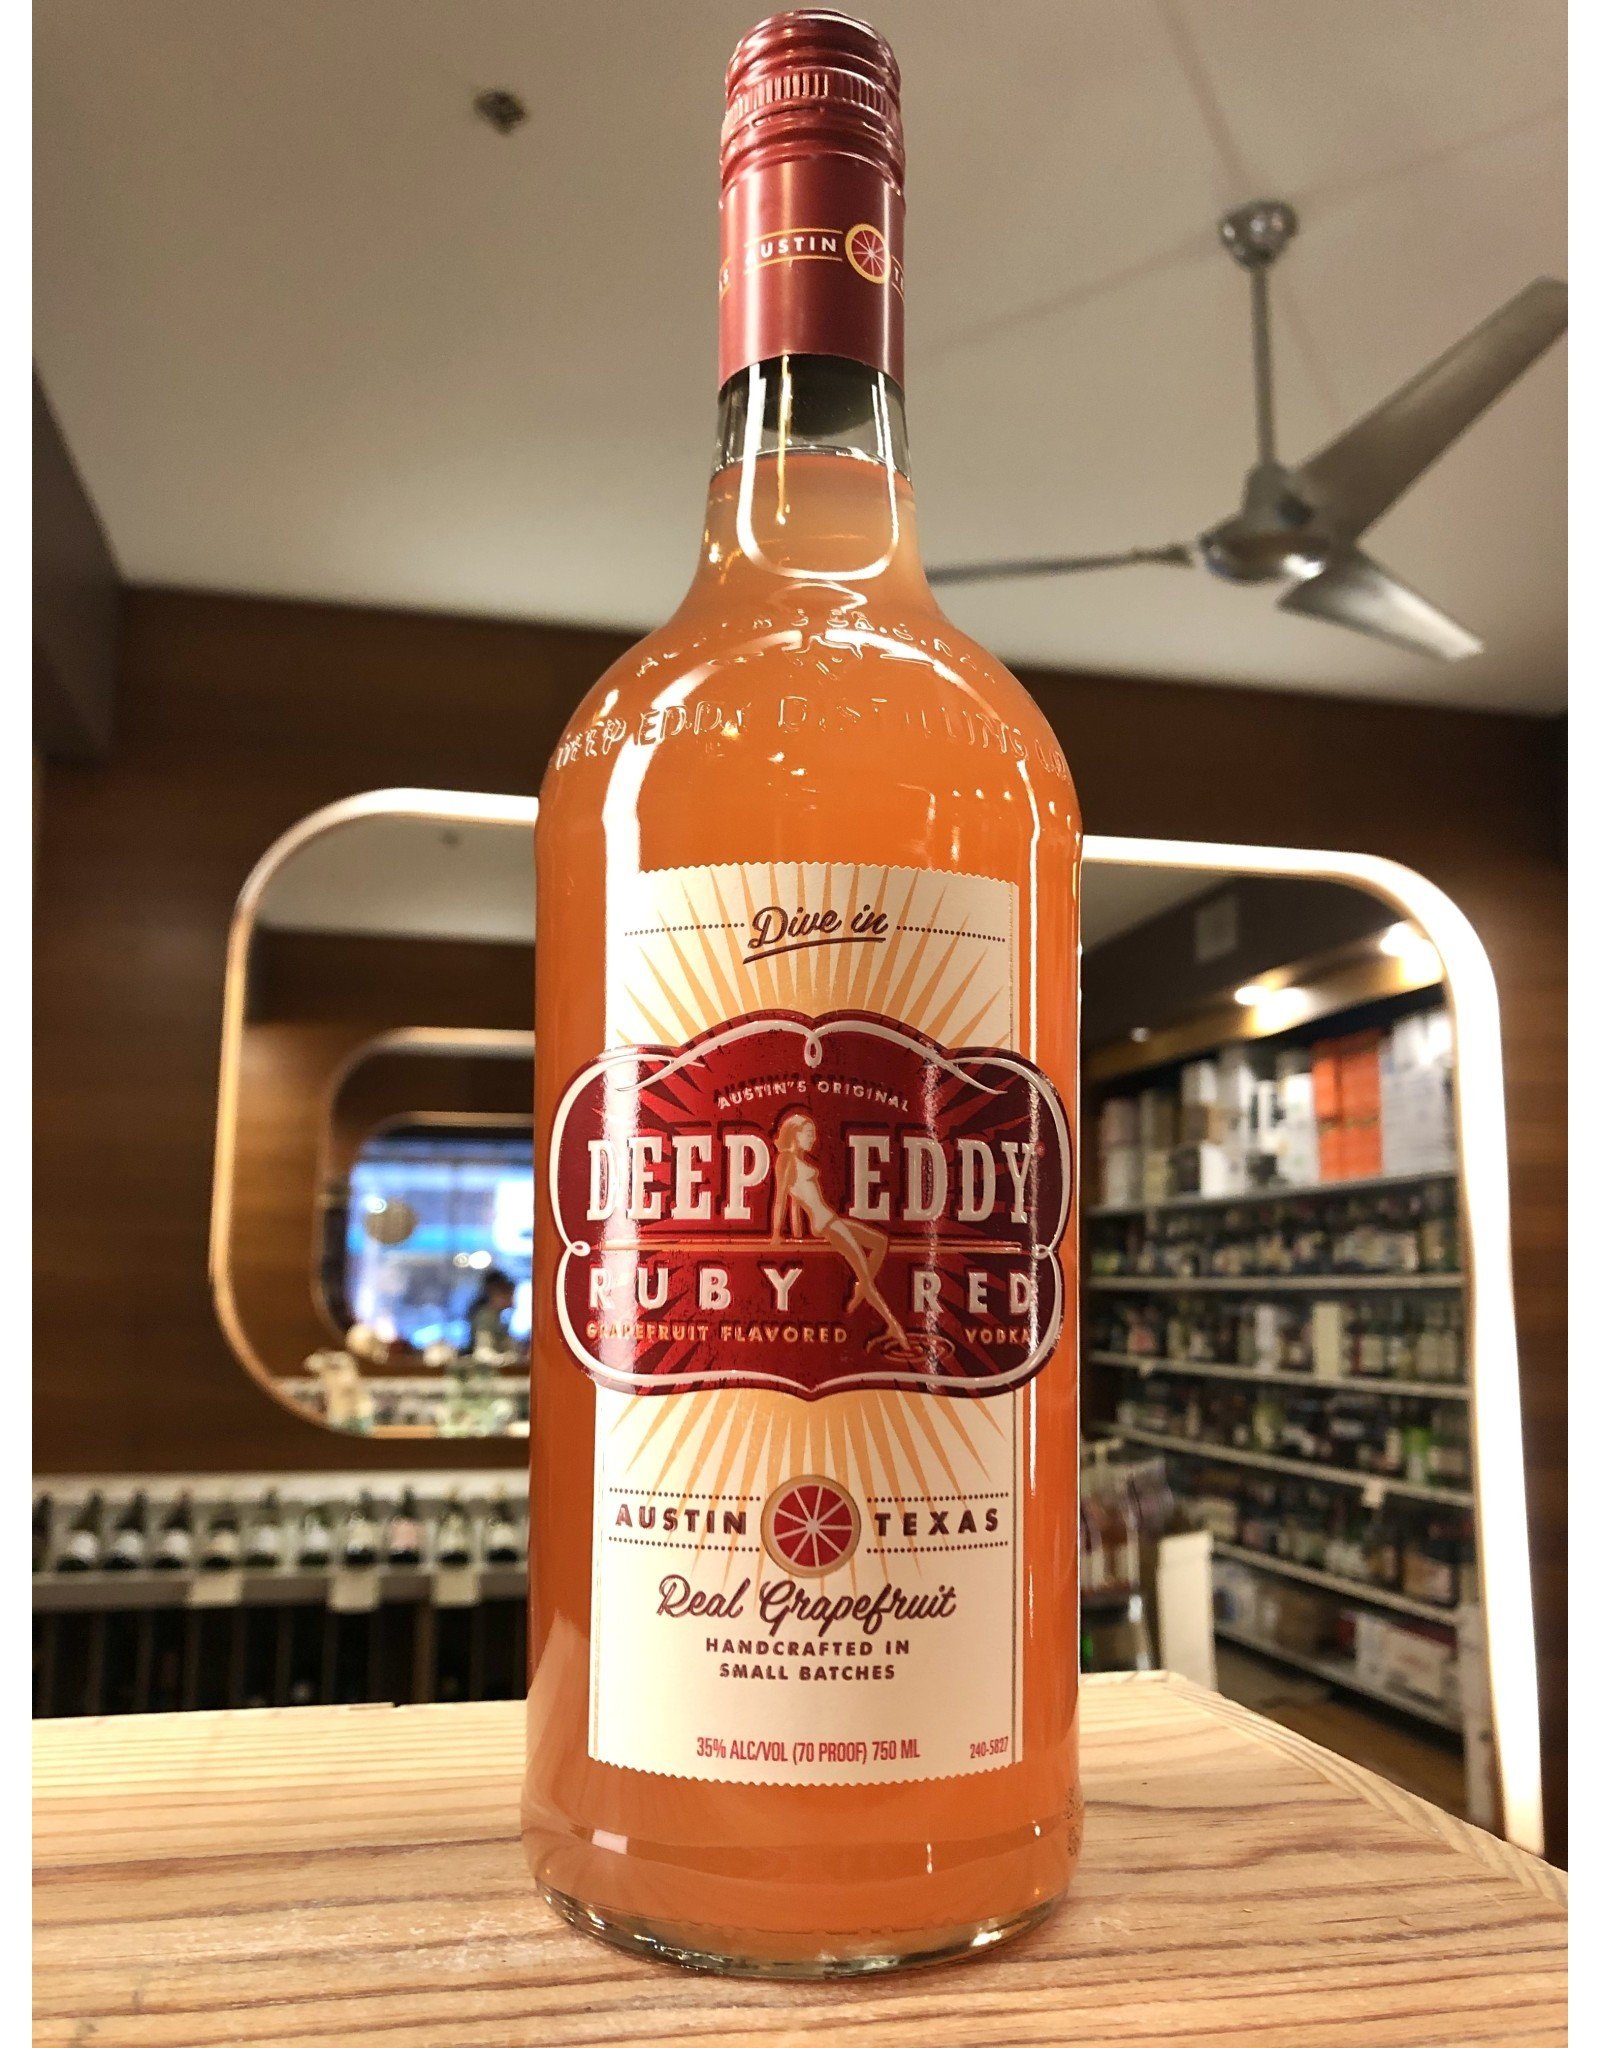 Deep Eddy Ruby Red Vodka - 750 ML